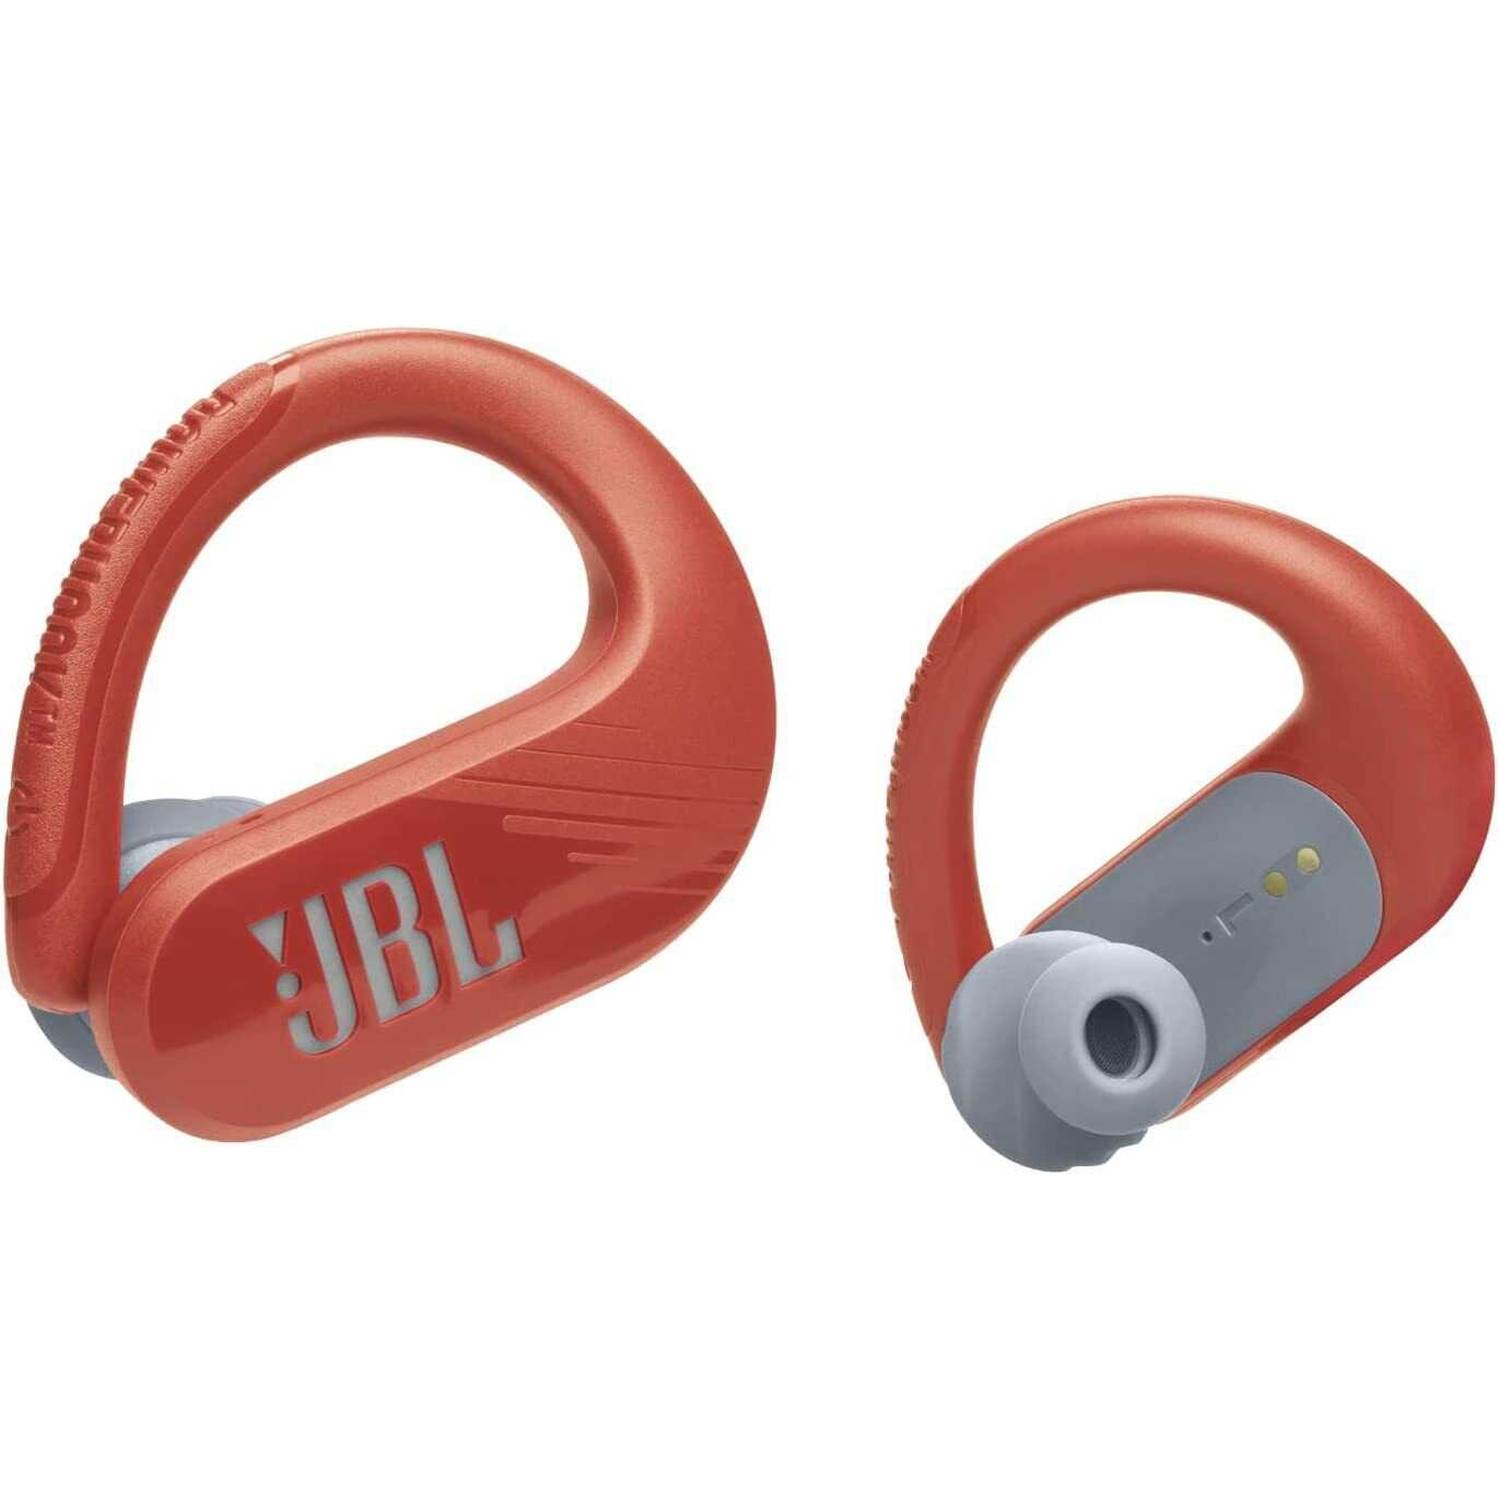 JBL Wireless Earphone Endurance Peak 3 Ear Hook Type Bluetooth Compatible